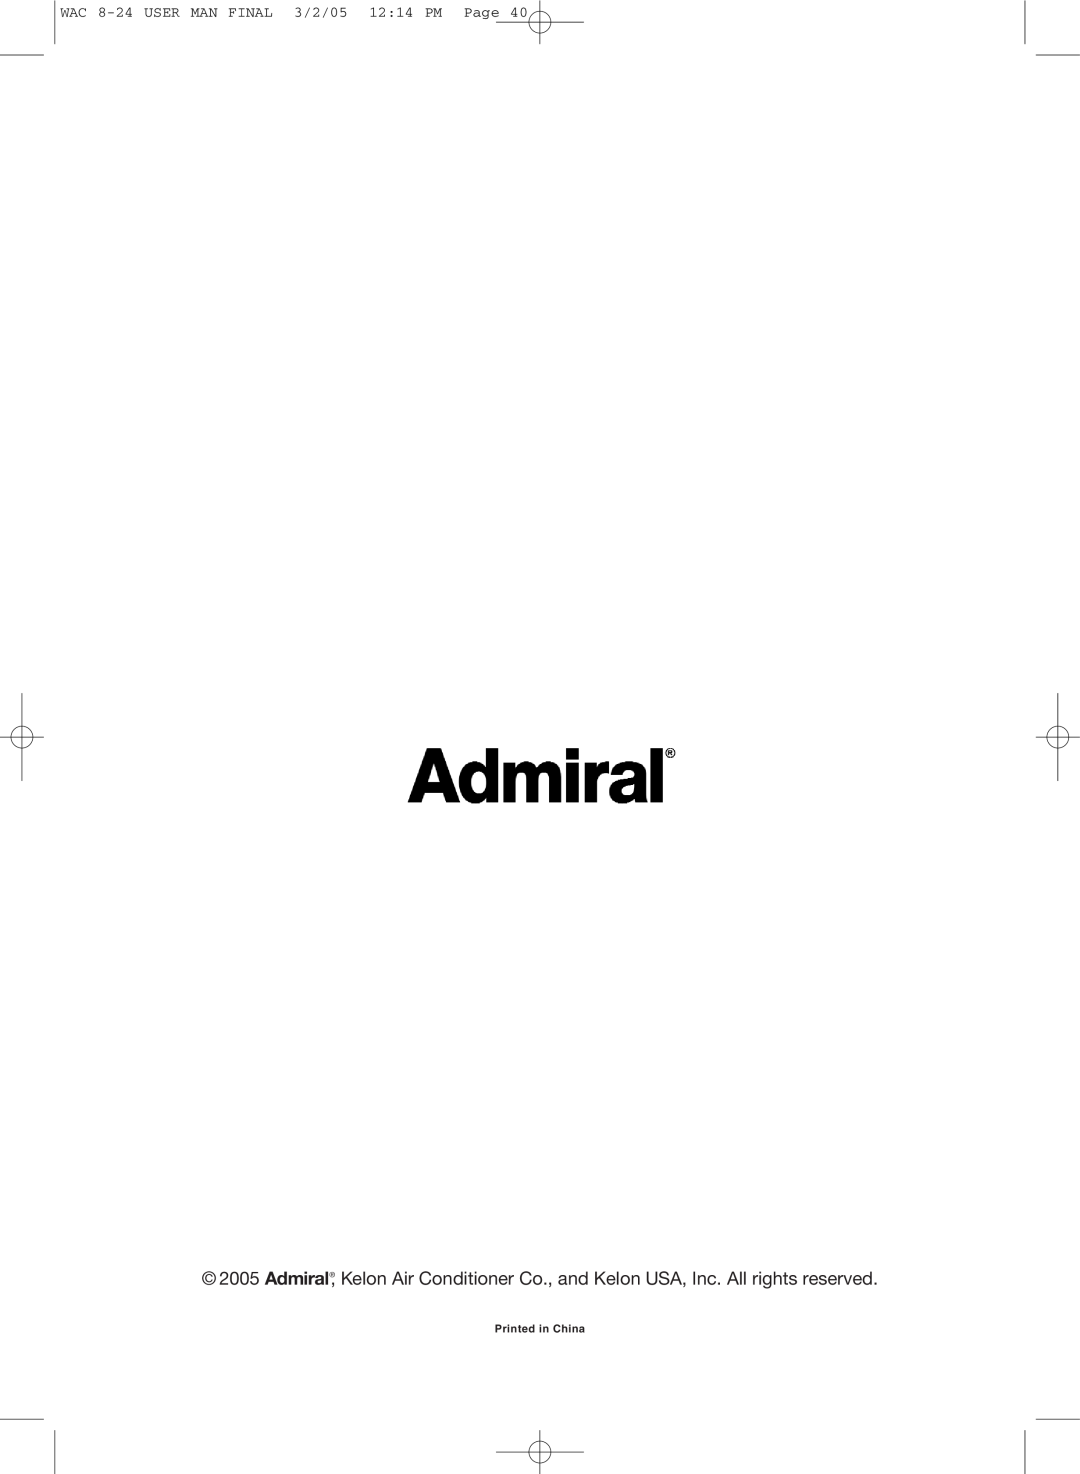 Admiral AAW-15CM1FHUE, AAW-15CR1FHUE, AAW-24CM1FHUE, AAW-22CR1FHUE, AAW-08CM1FHUE WAC 8-24USER MAN FINAL 3/2/05 1214 PM Page 